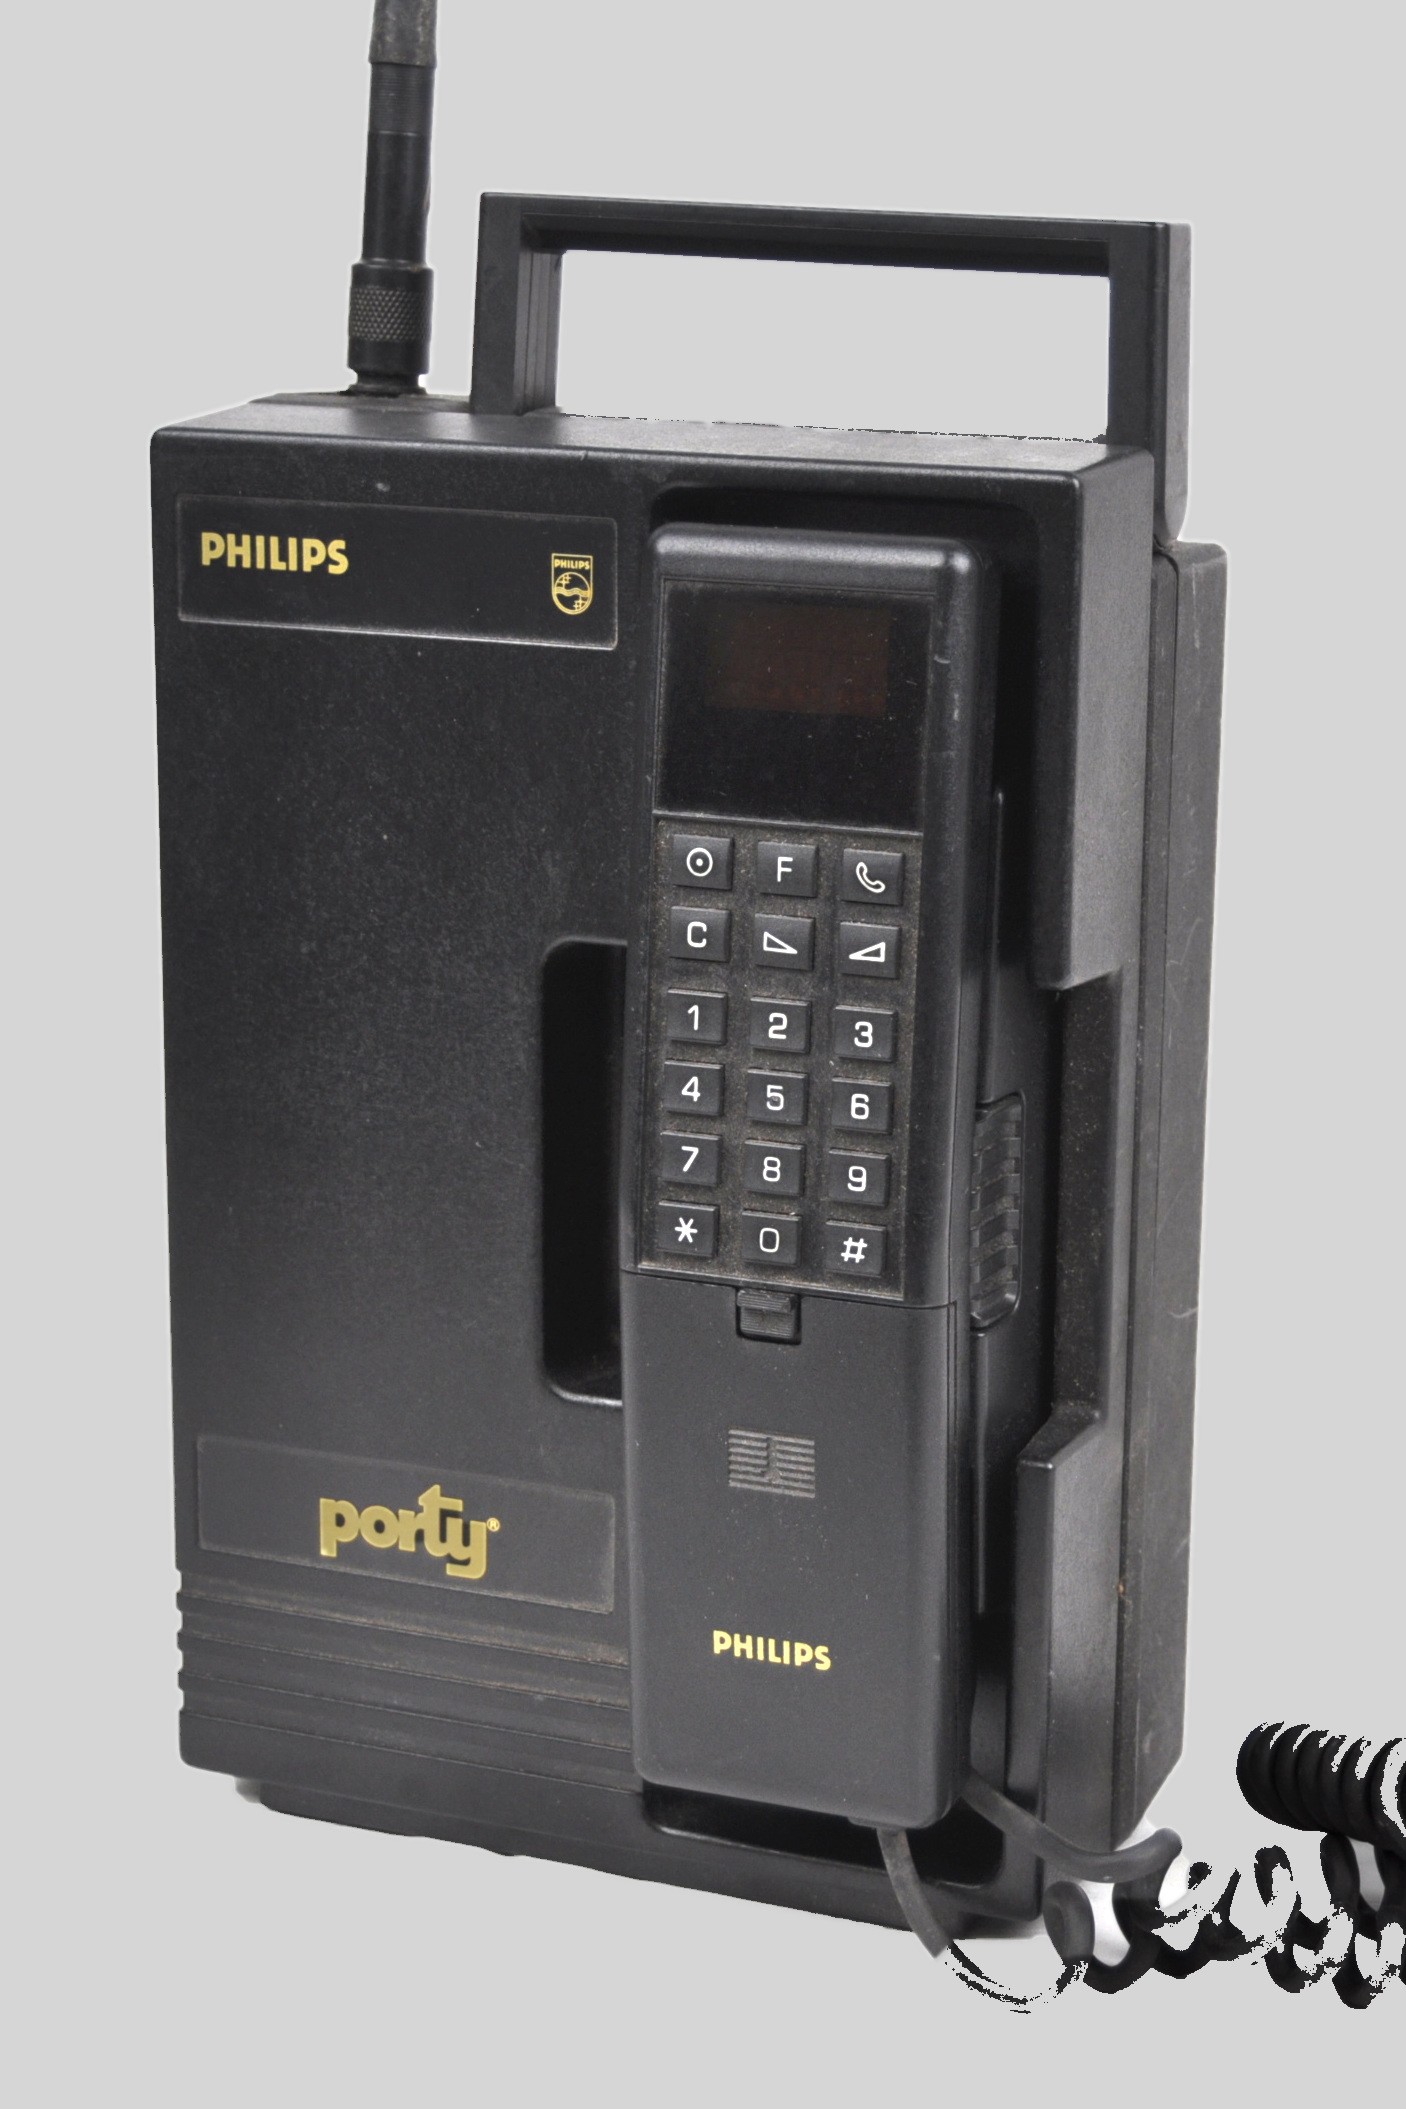 C Netz Auto Telefon "Philips Porty" BSA 53 (Volkskunde- und Freilichtmuseum Roscheider Hof CC0)